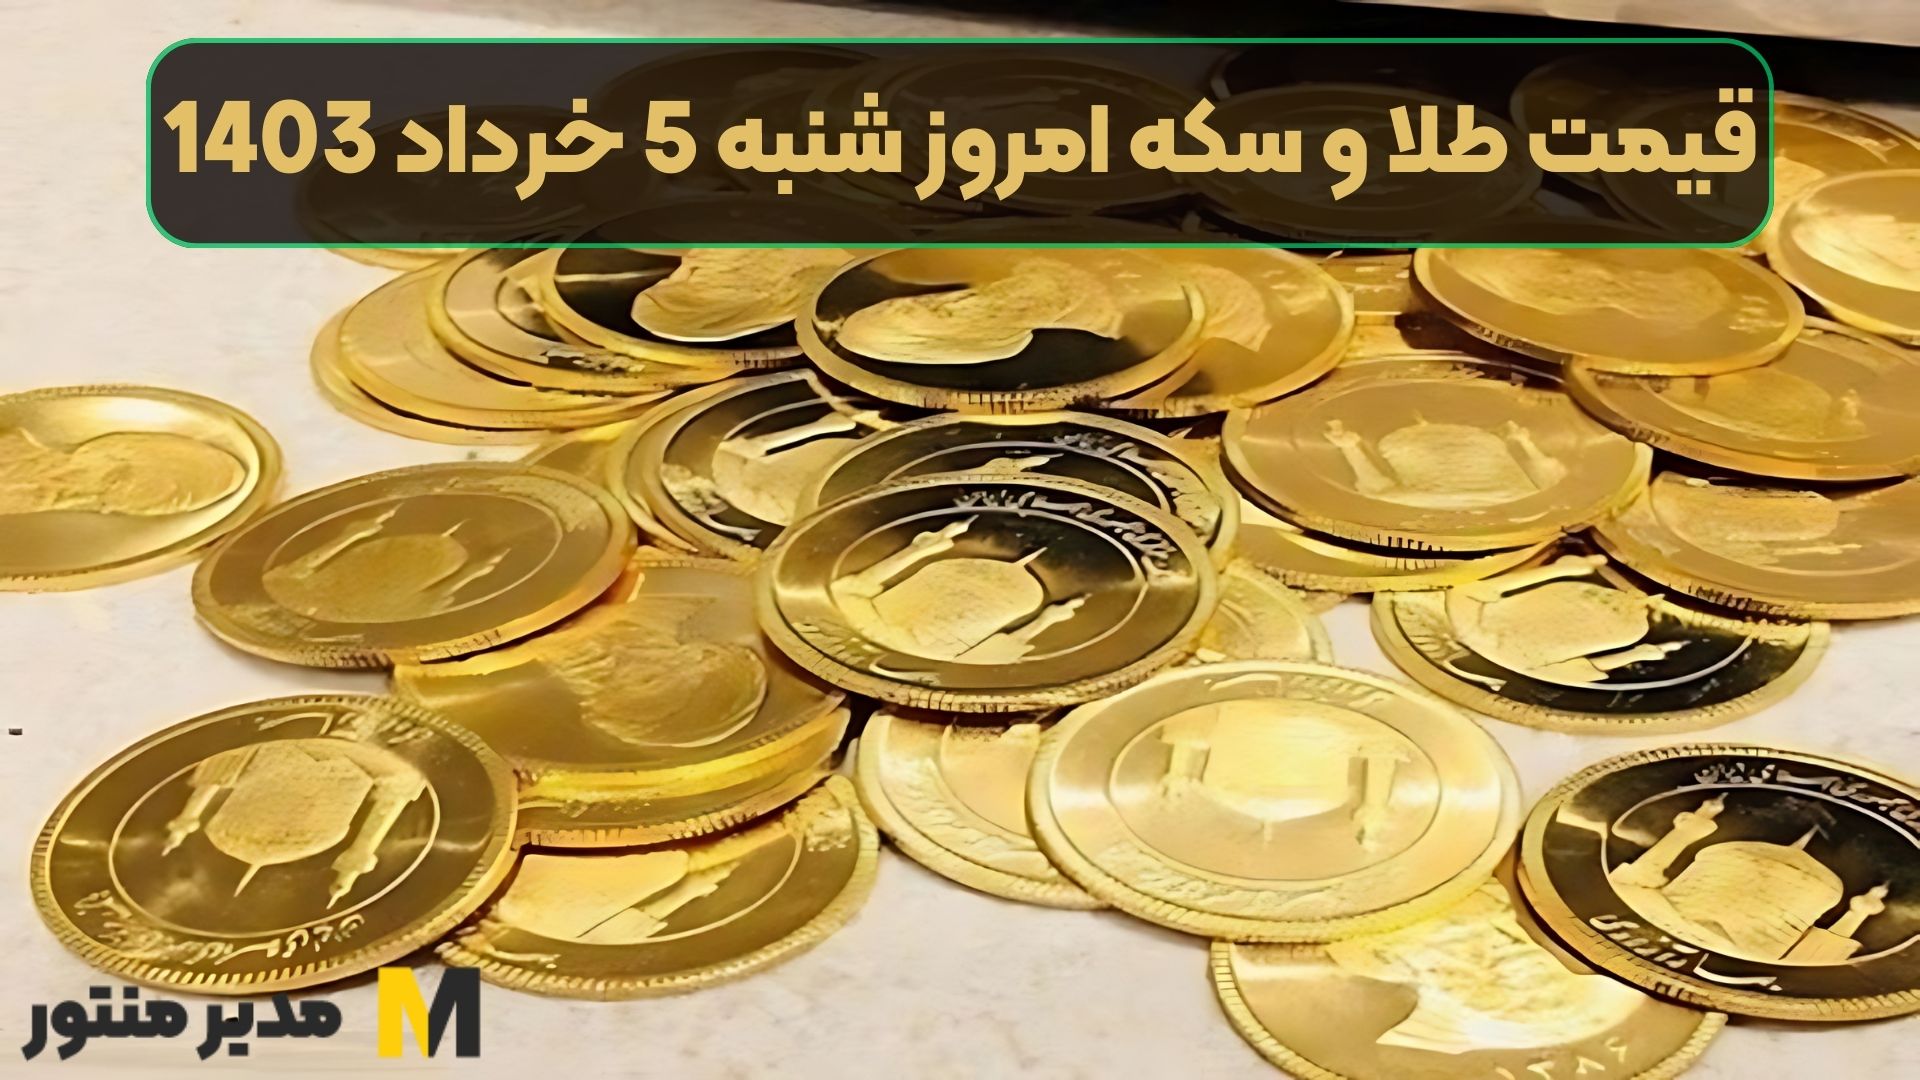 قیمت طلا و سکه امروز شنبه 5 خرداد 1403